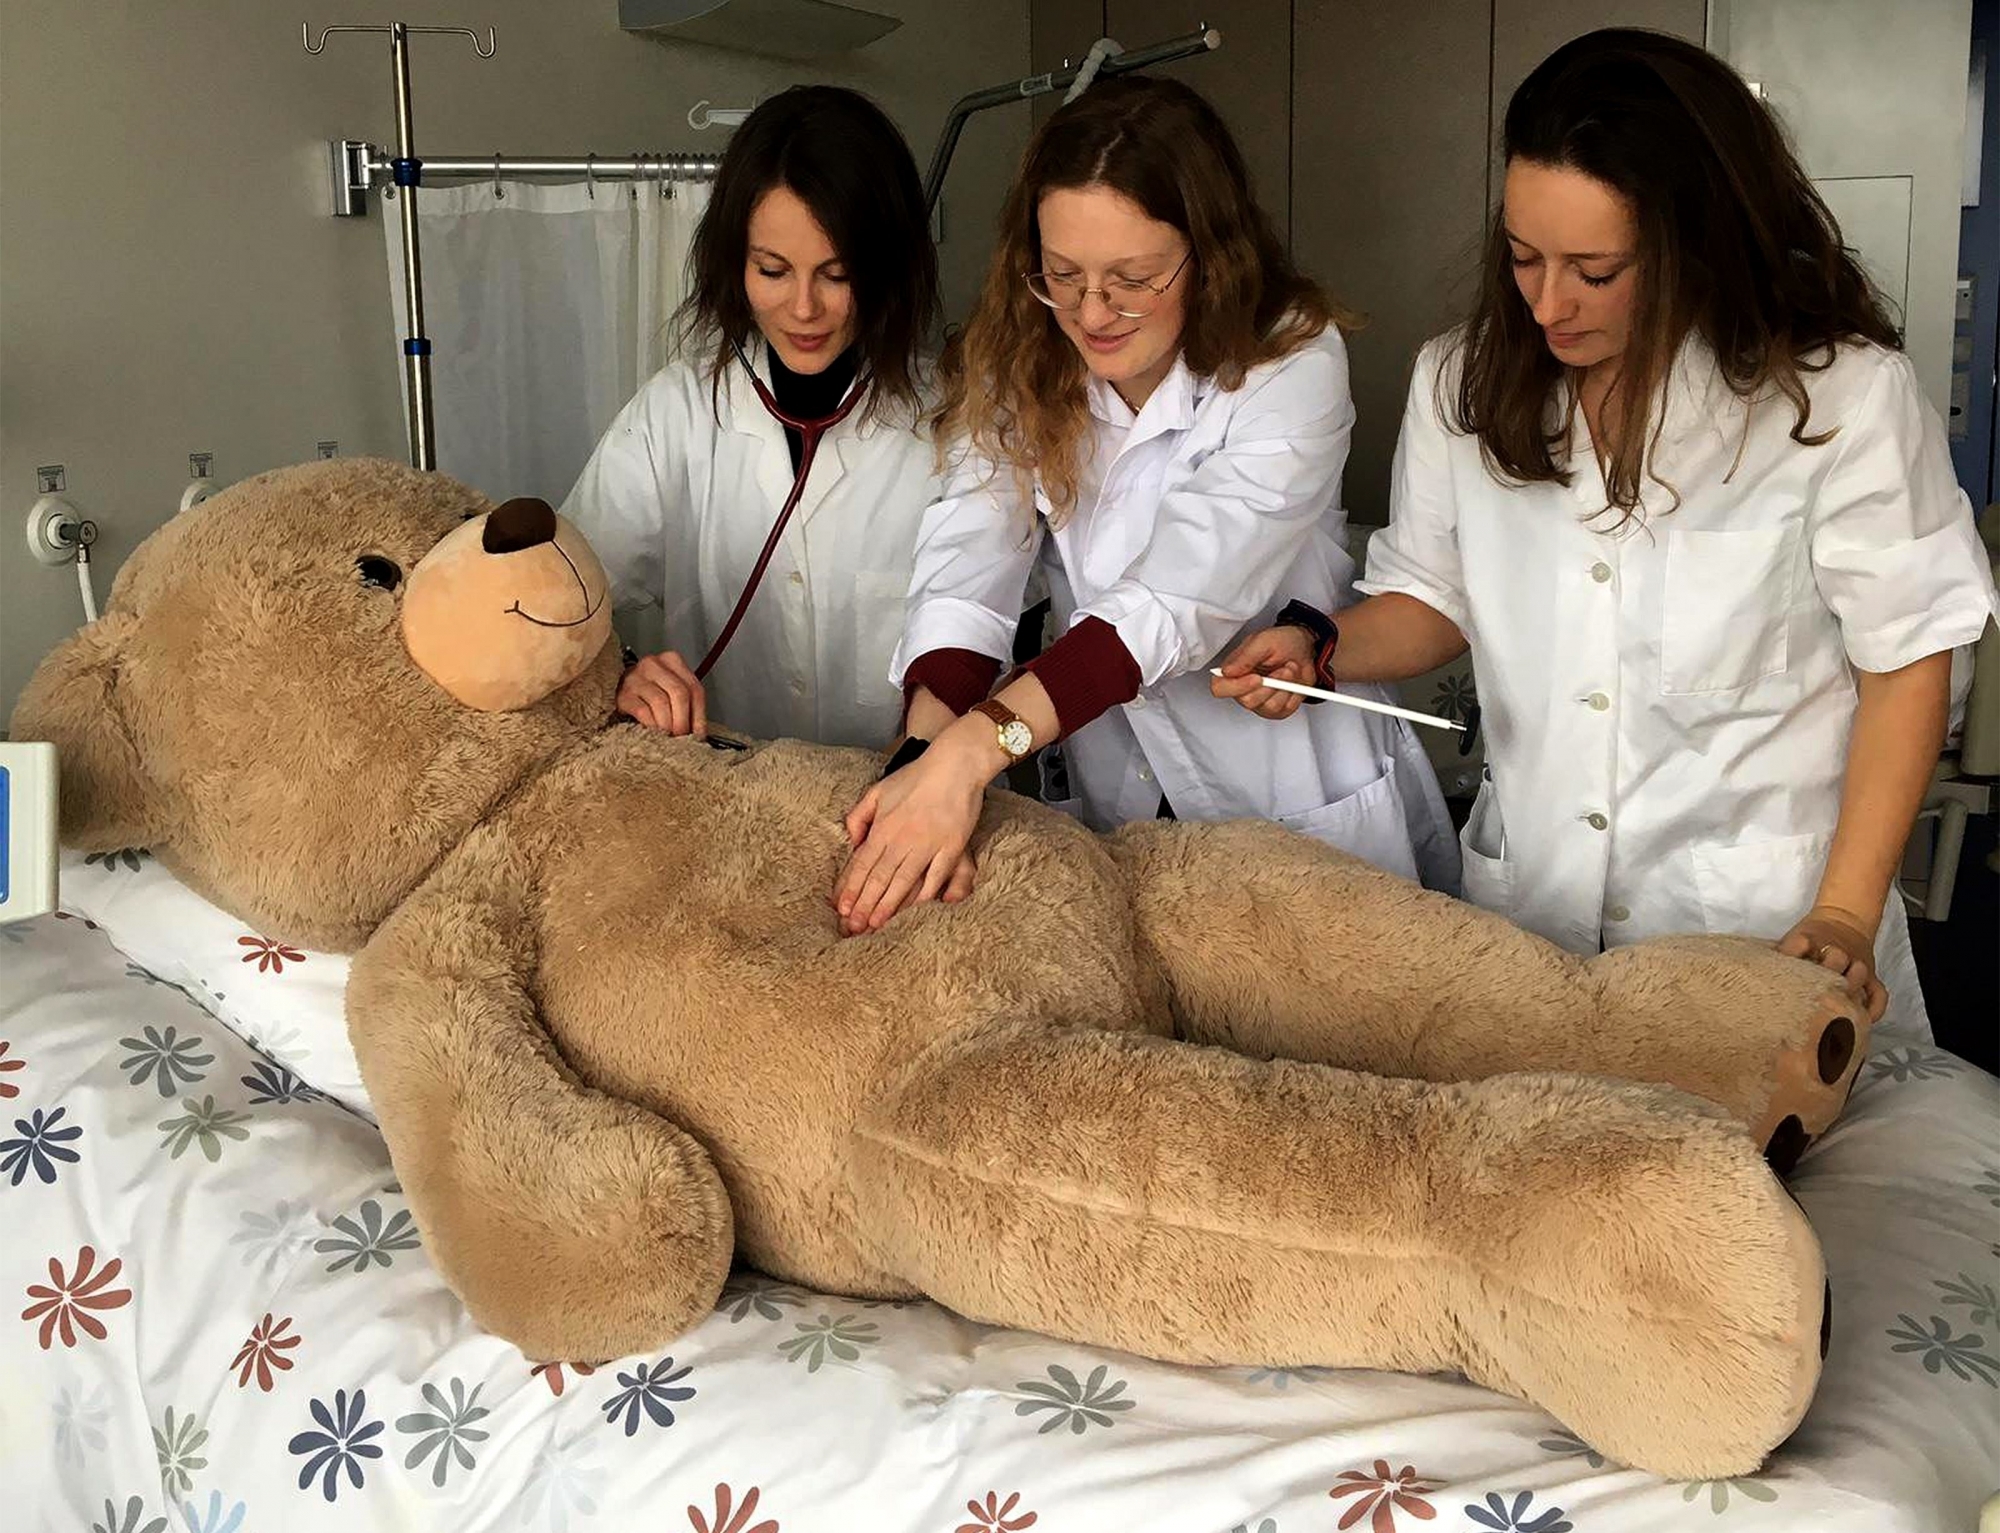 Noémie Guggisberg, Pauline Hämmerli et Saskia Giovannini ouvrent l'hôpital des nounours (manque Clélie Jaccard).